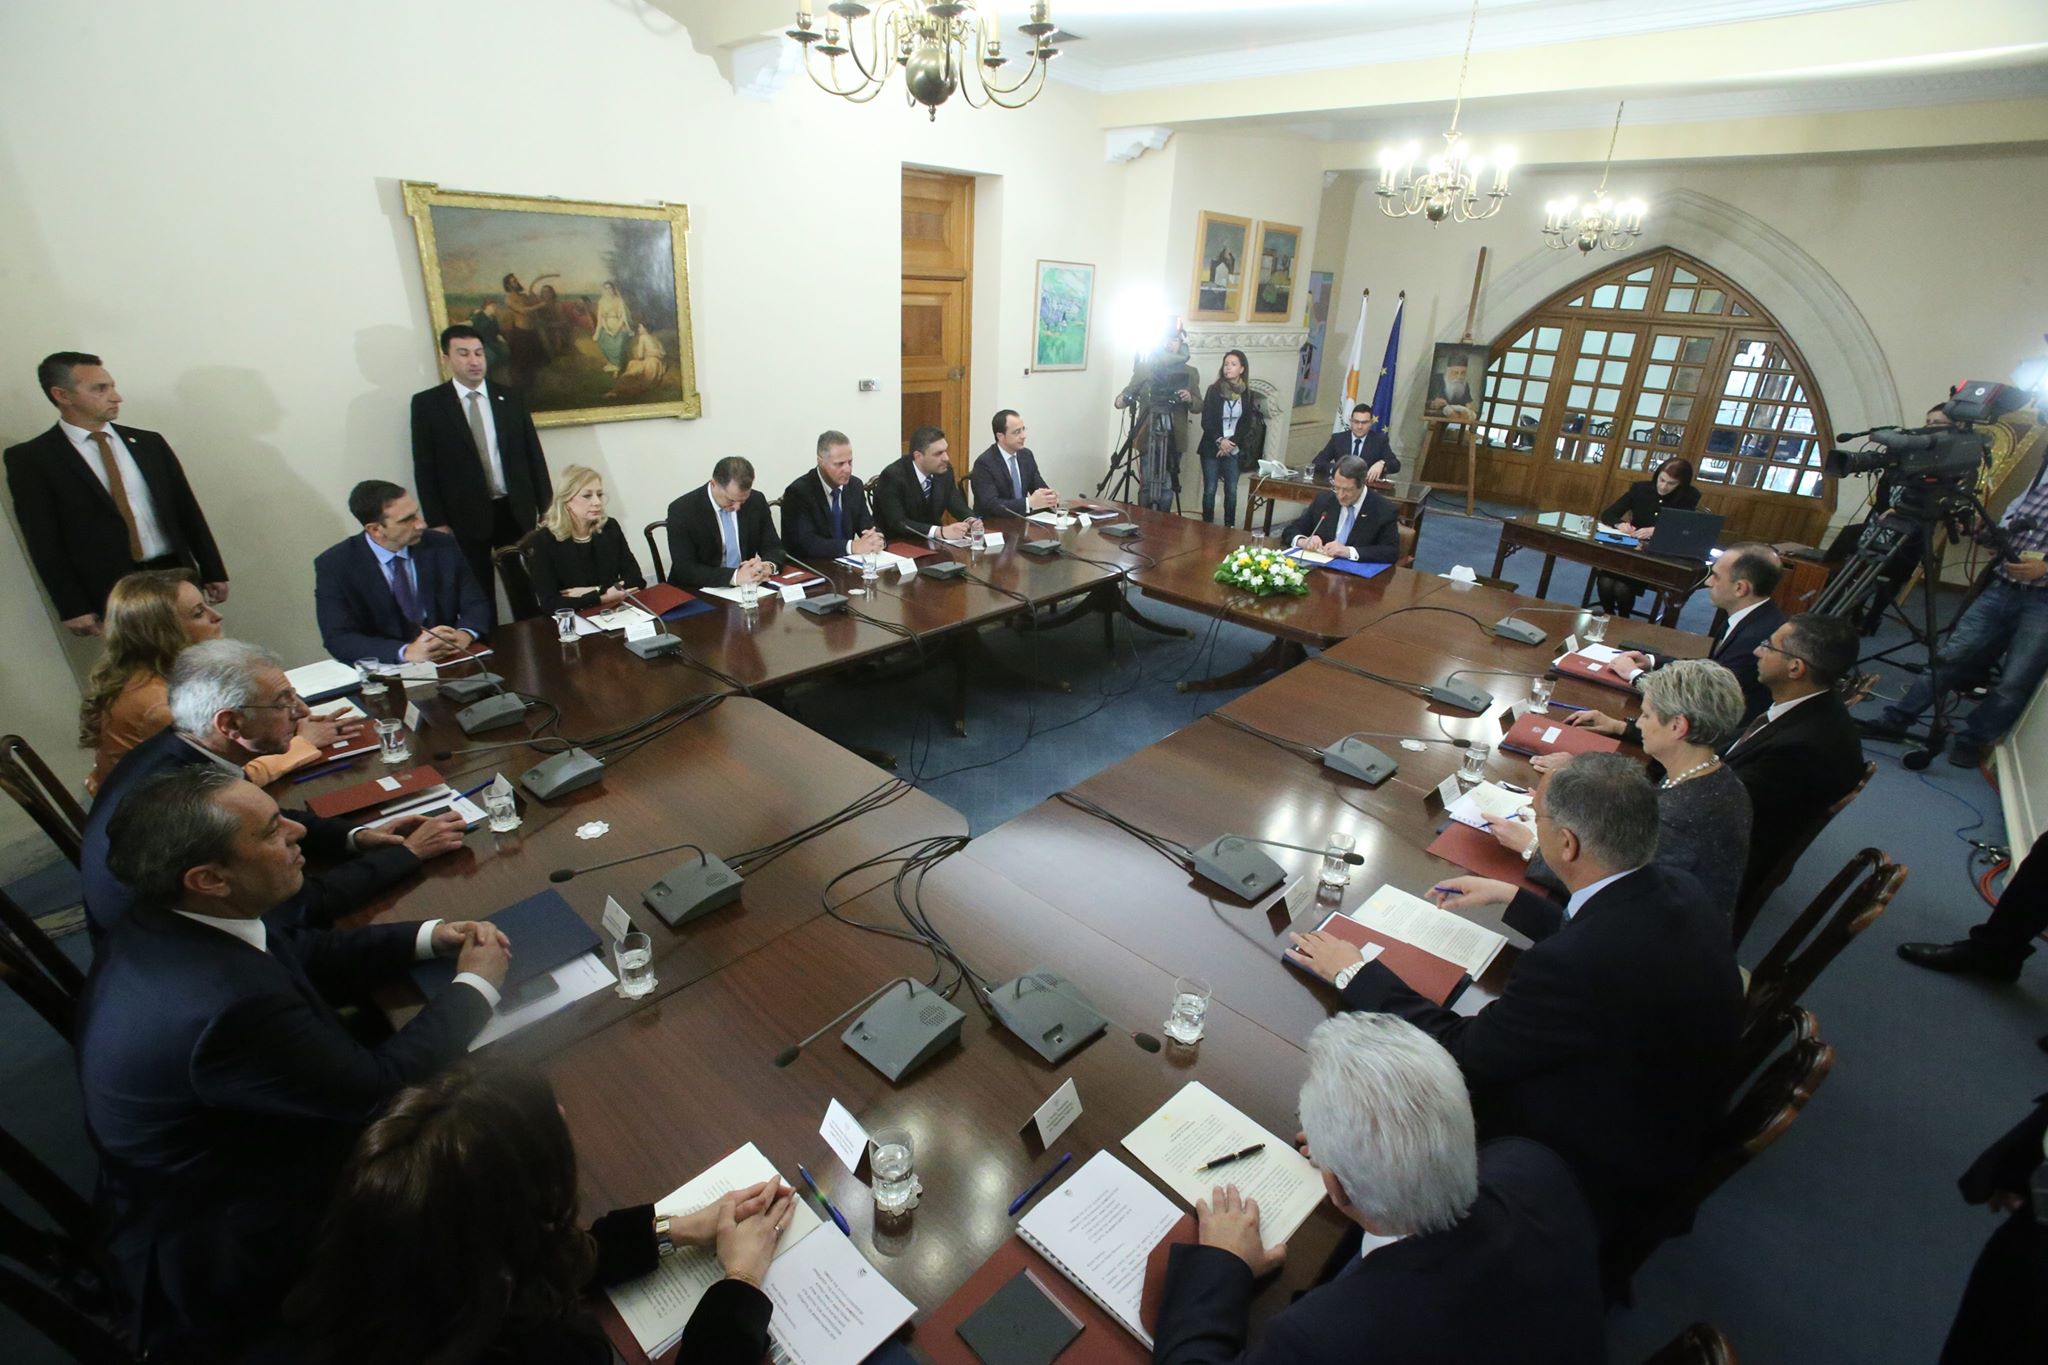 Κύπρος: Πλήρωση κενών θέσεων στο Δημόσιο - Τι αποφάσισε το Υπουργικό